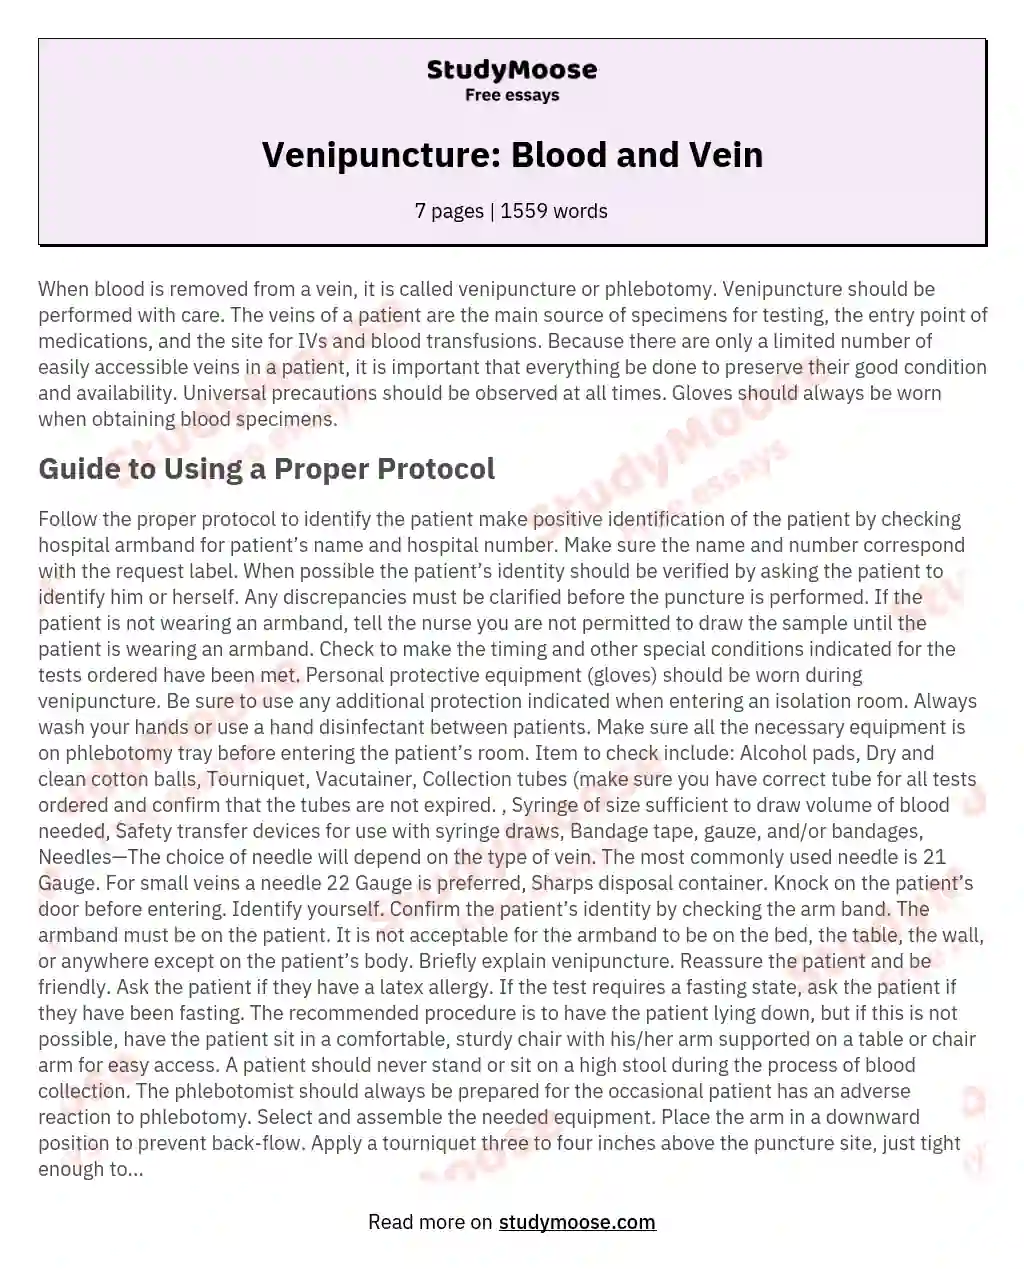 Venipuncture: Blood and Vein essay